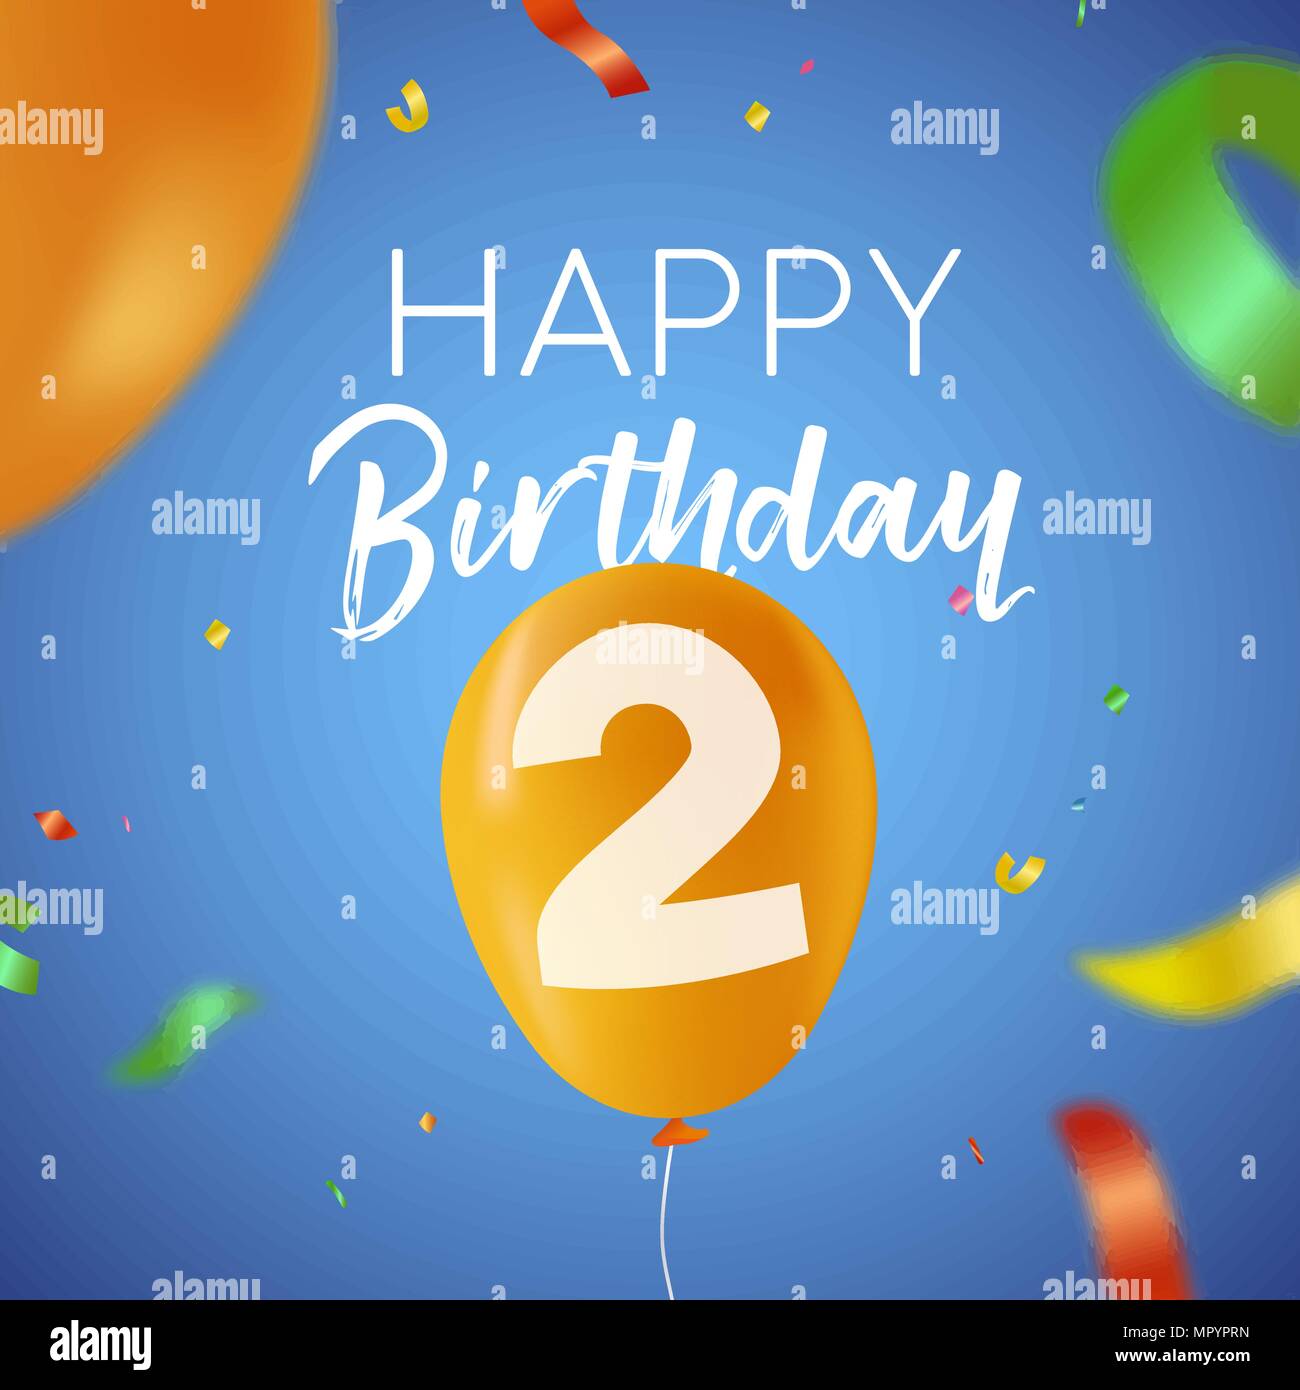 Happy Birthday 2 zwei Jahre Spaß Design mit Ballon Anzahl und bunte Konfetti Dekoration. Ideal für Party Einladung oder Grußkarte. EPS 10 Vektor. Stock Vektor